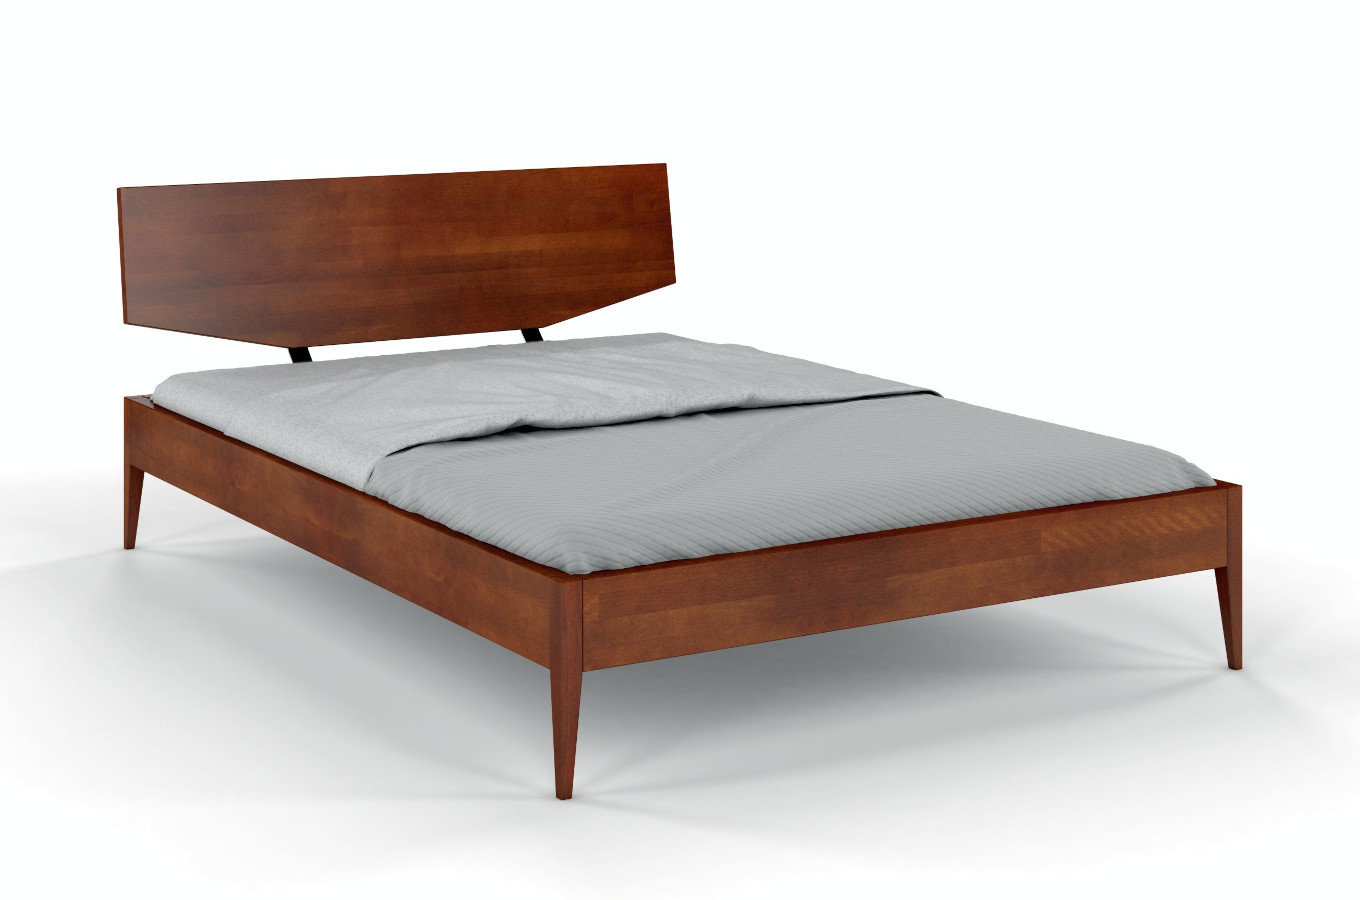 Łóżko drewniane bukowe Skandica SUND / 180x200 cm, kolor orzech